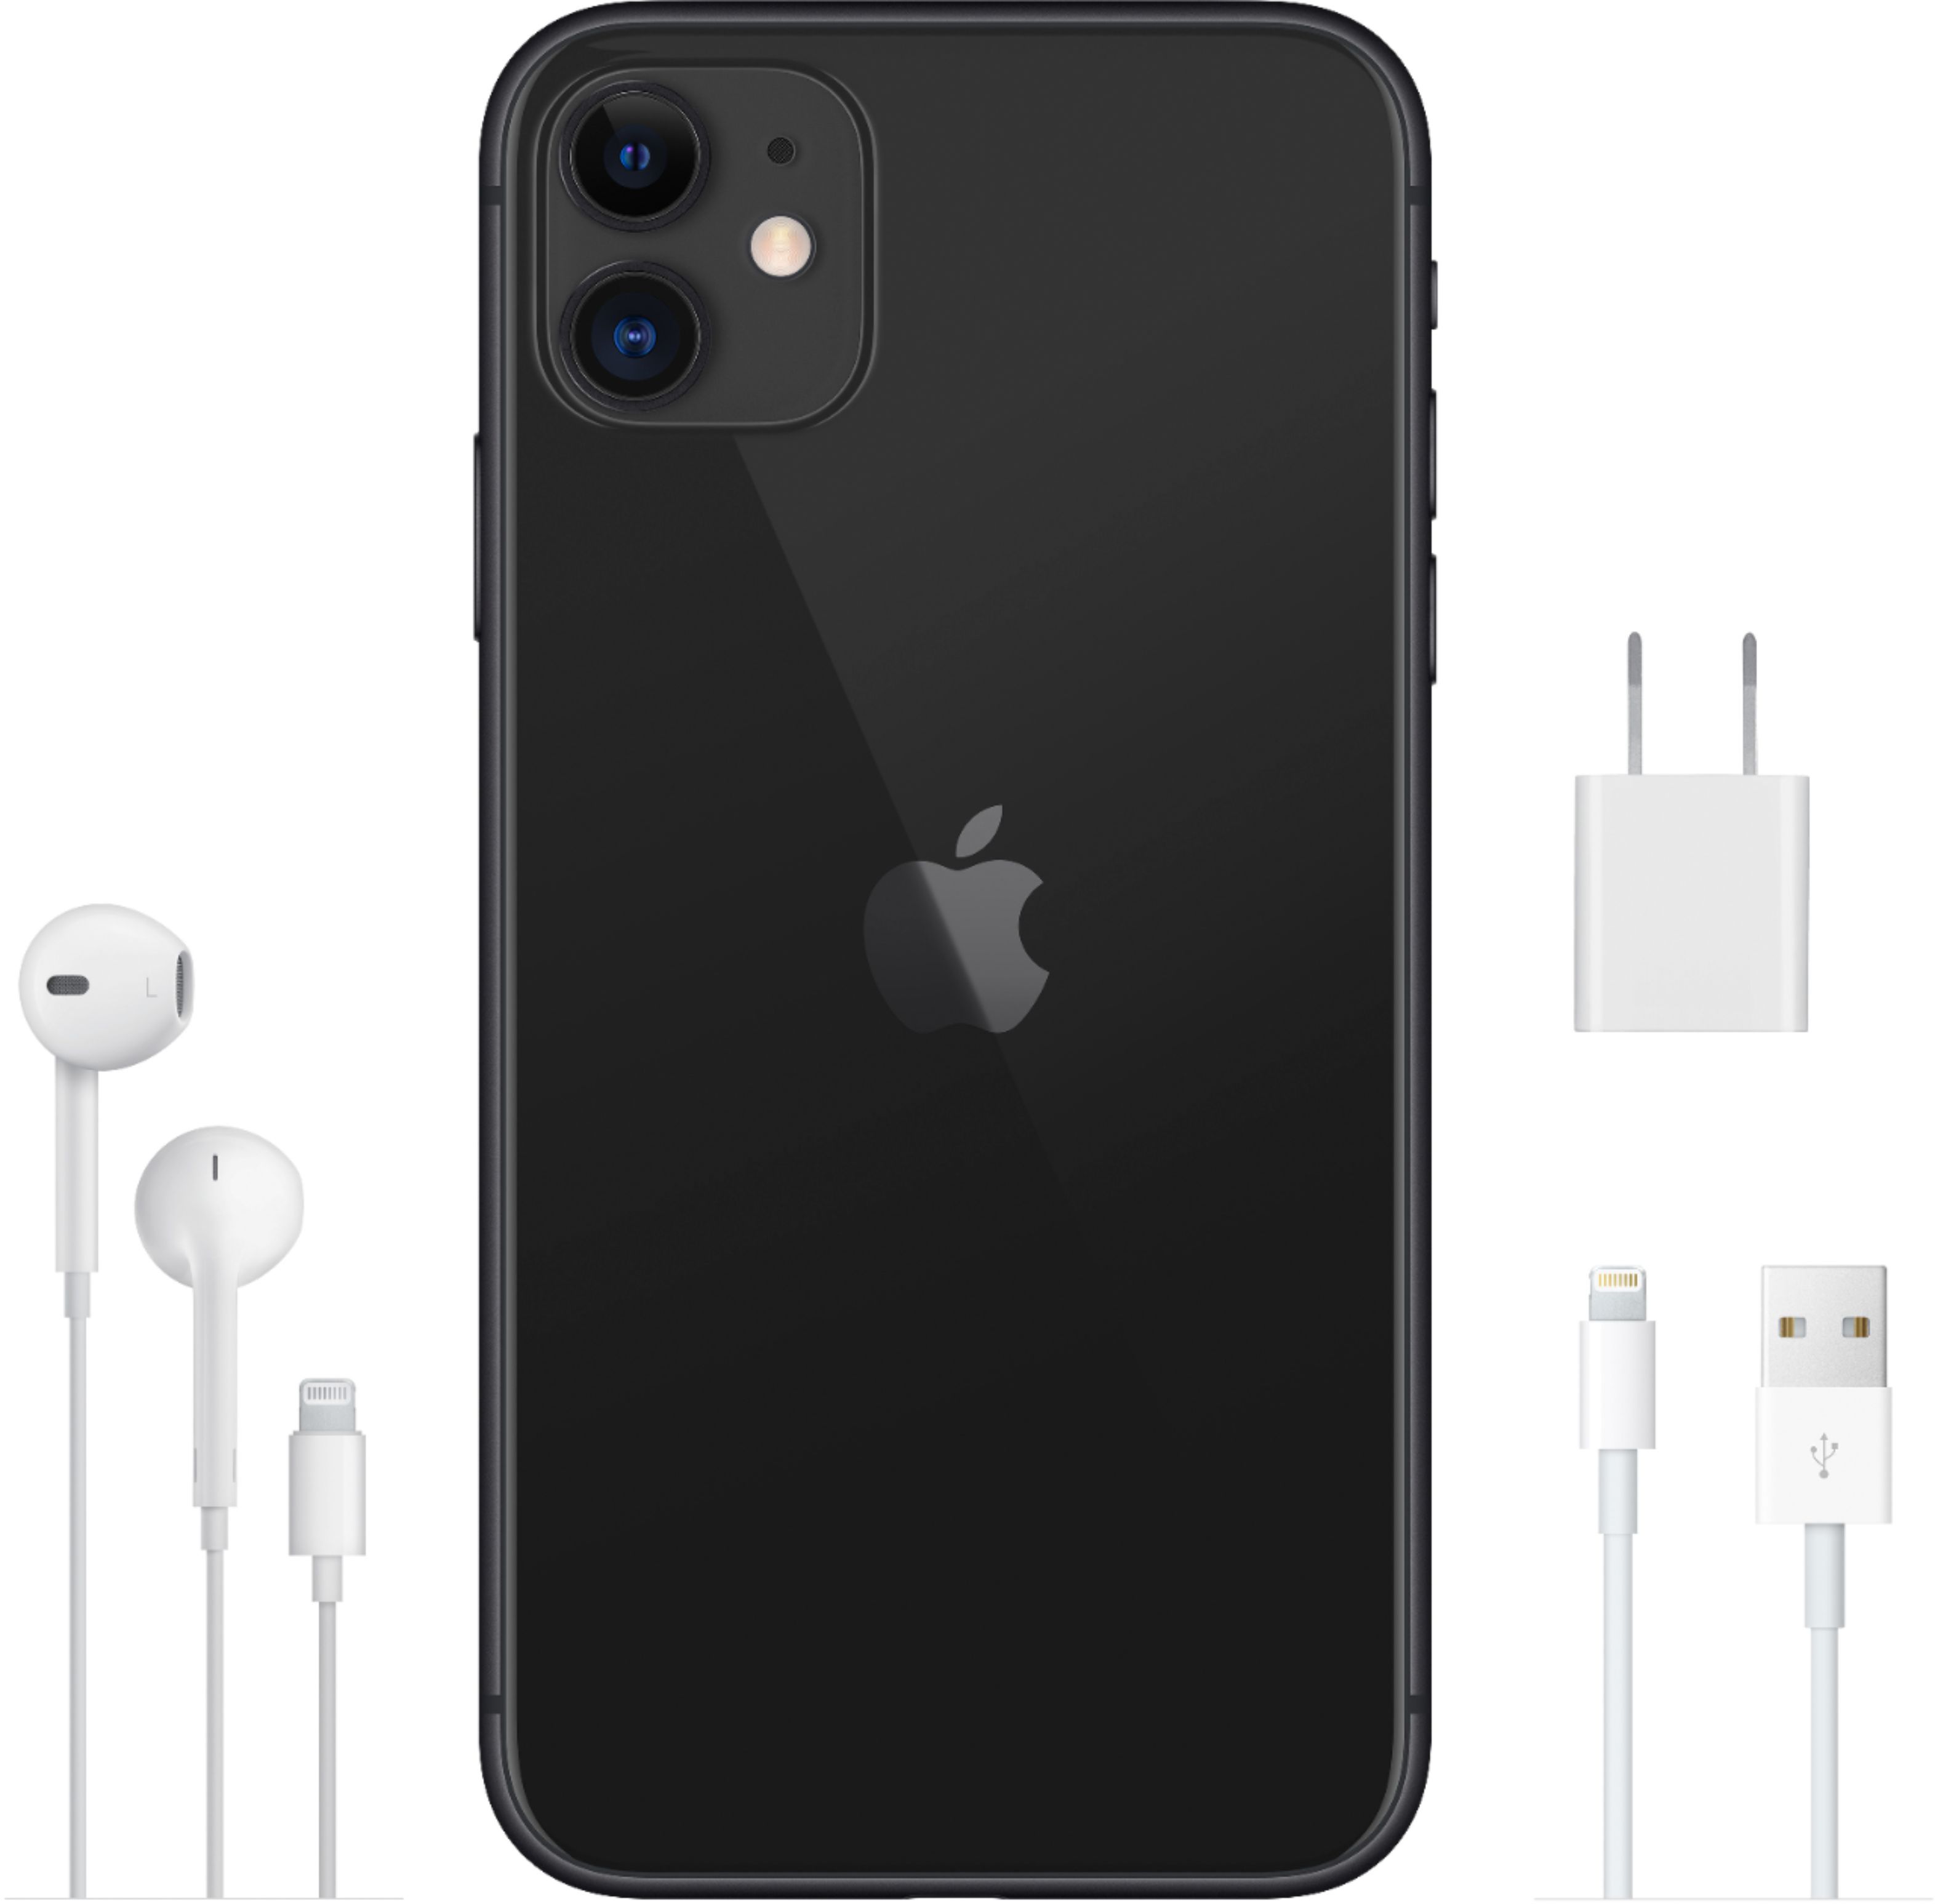 スマートフォン/携帯電話 スマートフォン本体 Best Buy: Apple iPhone 11 256GB Black (Unlocked) MWL12LL/A